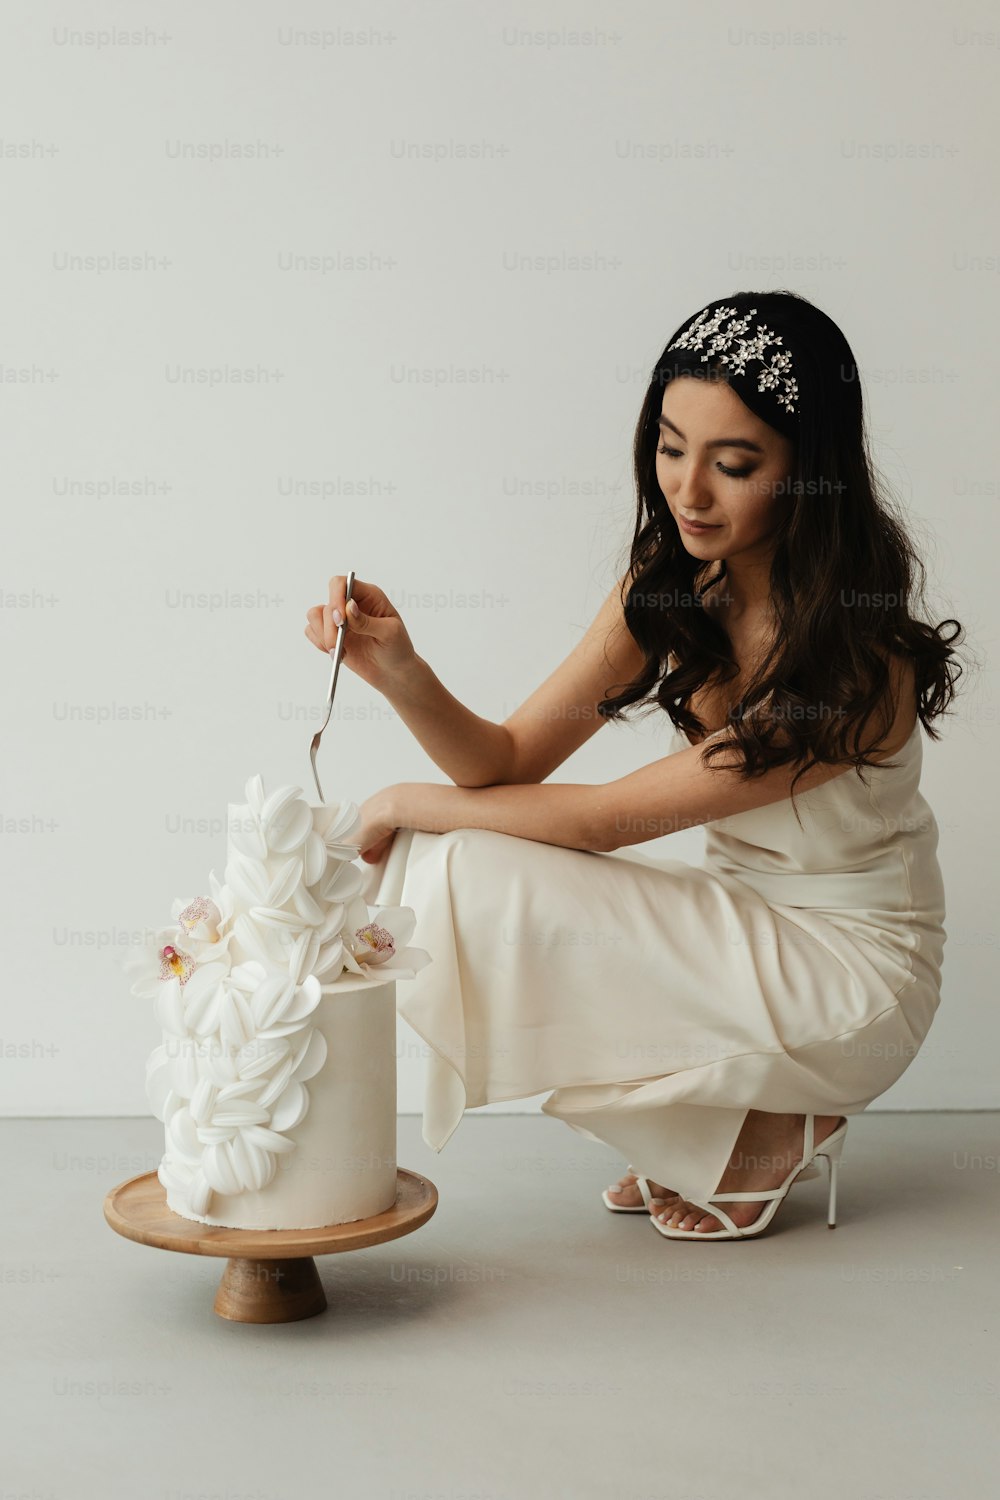 Una mujer con un vestido blanco cortando un pastel de bodas